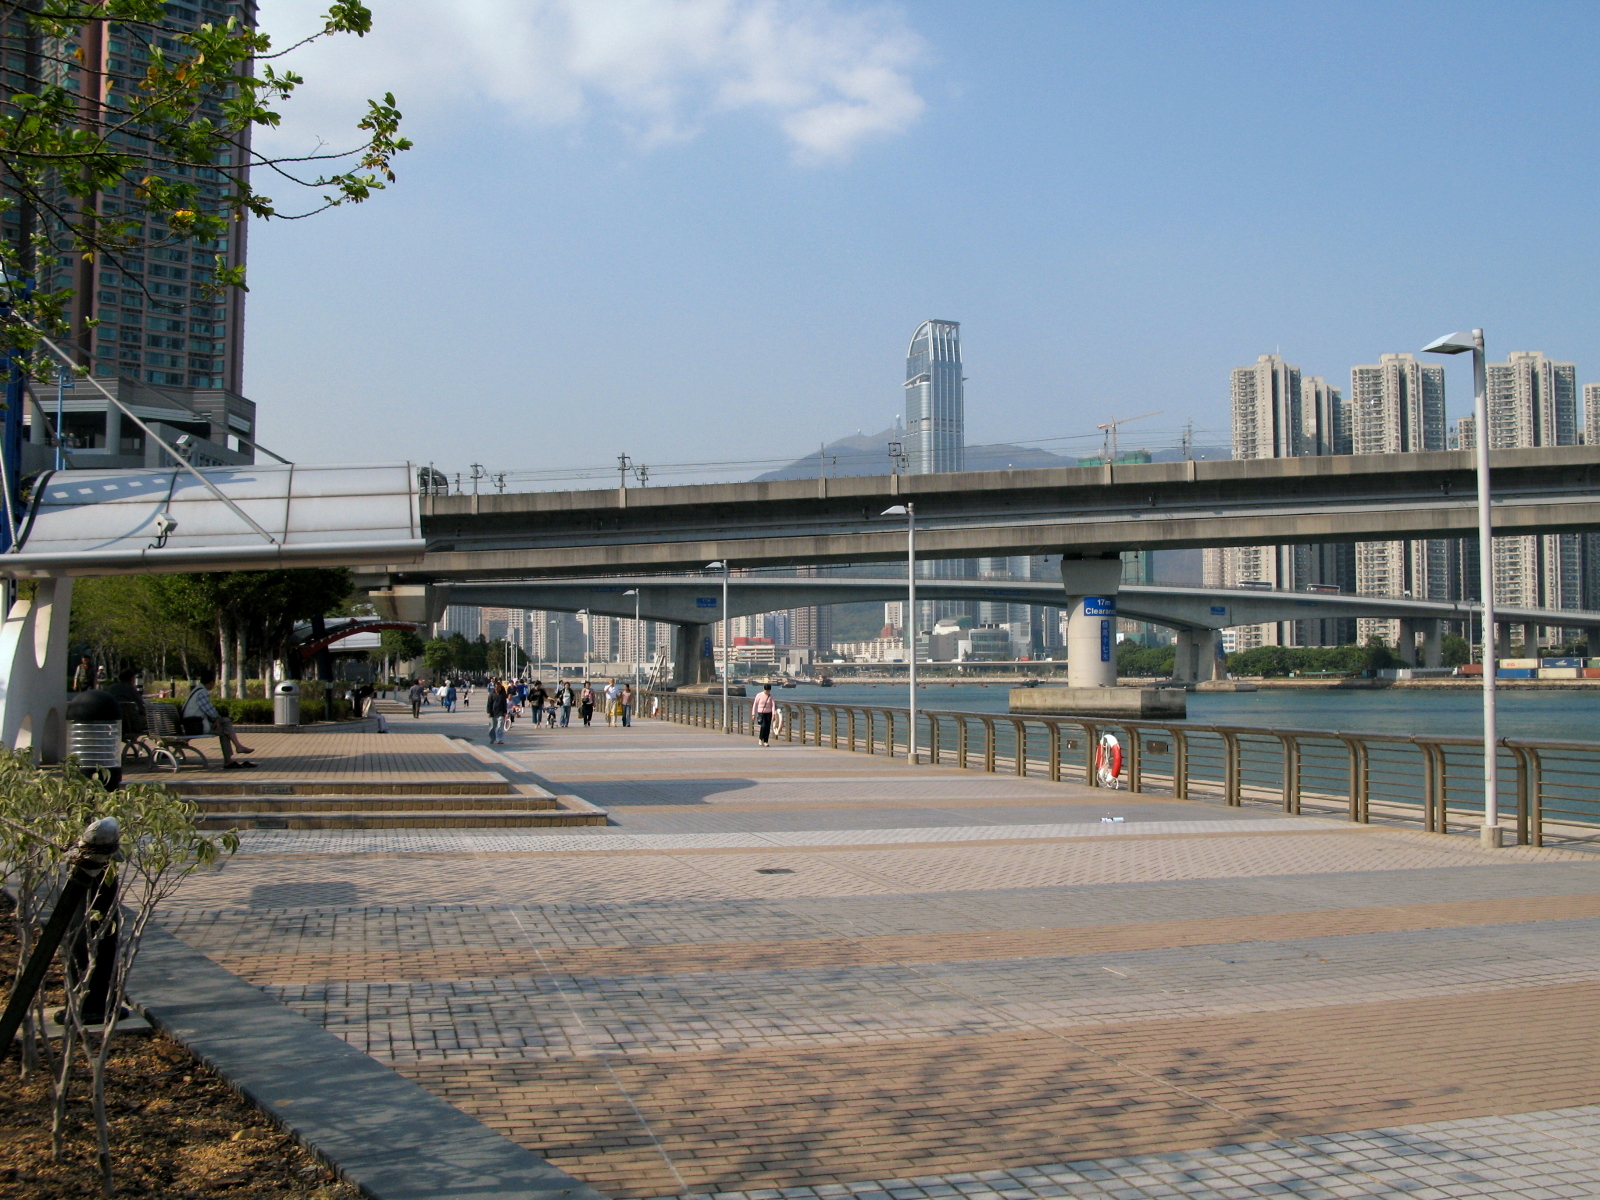 HK_Tsing_Yi_Promenade_view1.jpg